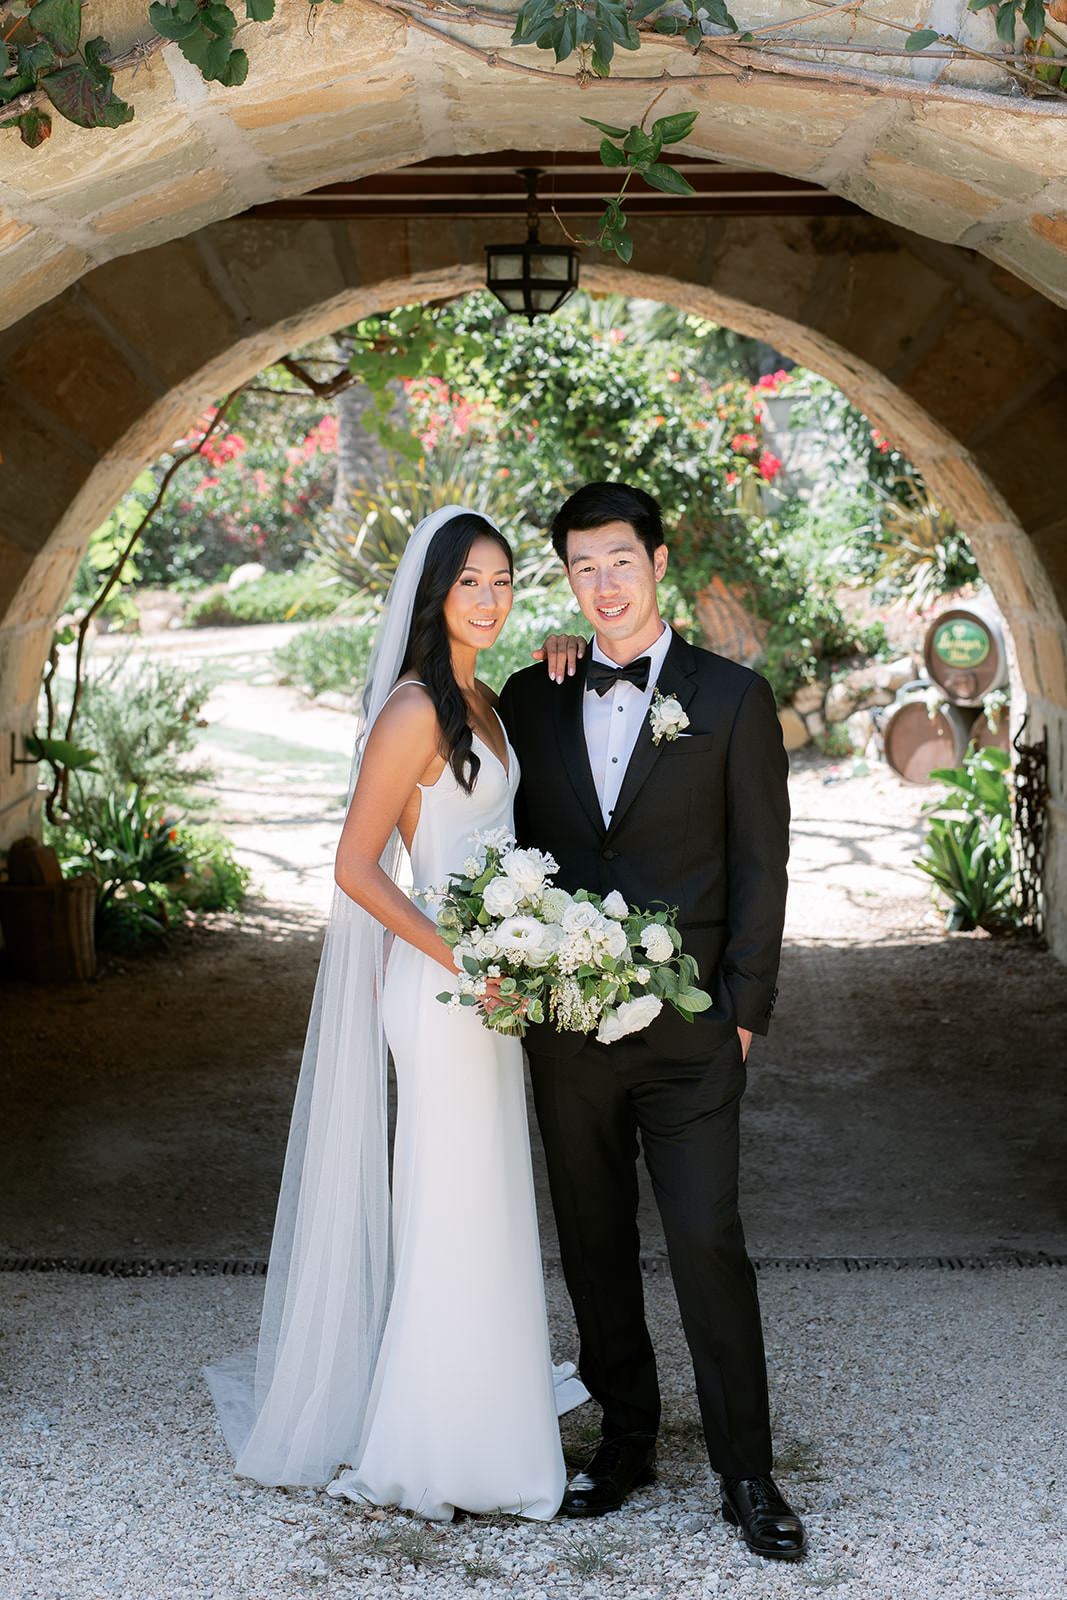 Santa Barbara estate wedding photos